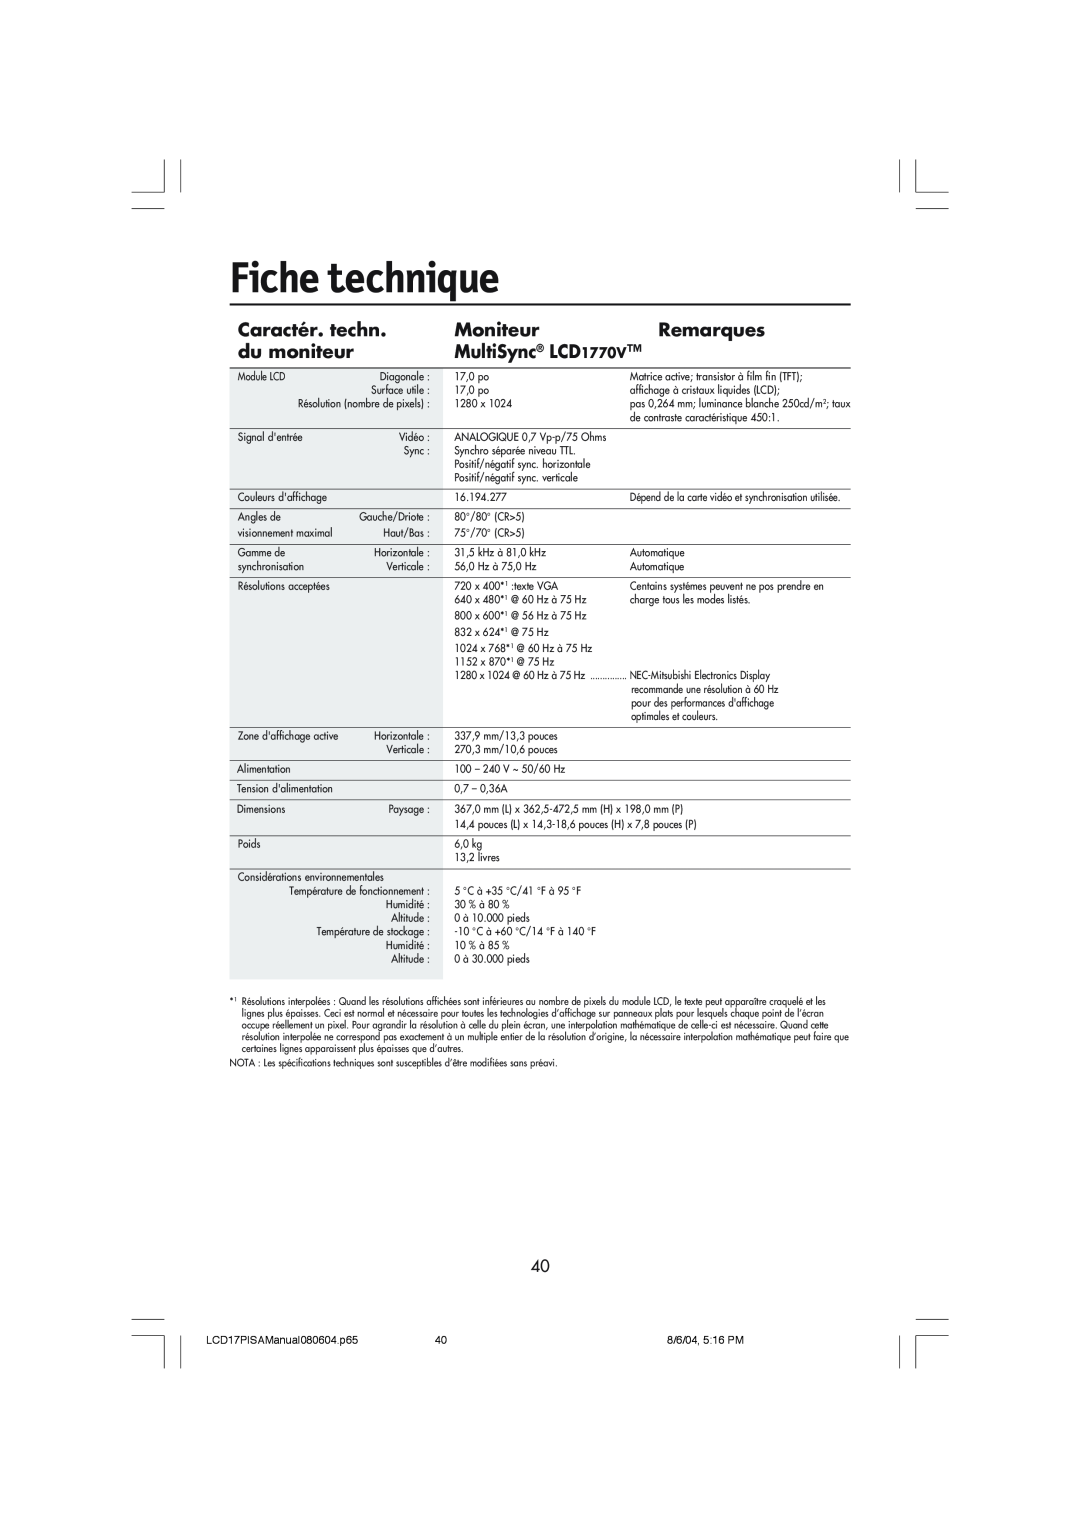 NEC user manual Fiche technique, Caractér. techn, Moniteur, Remarques, du moniteur, MultiSync LCD1770V 